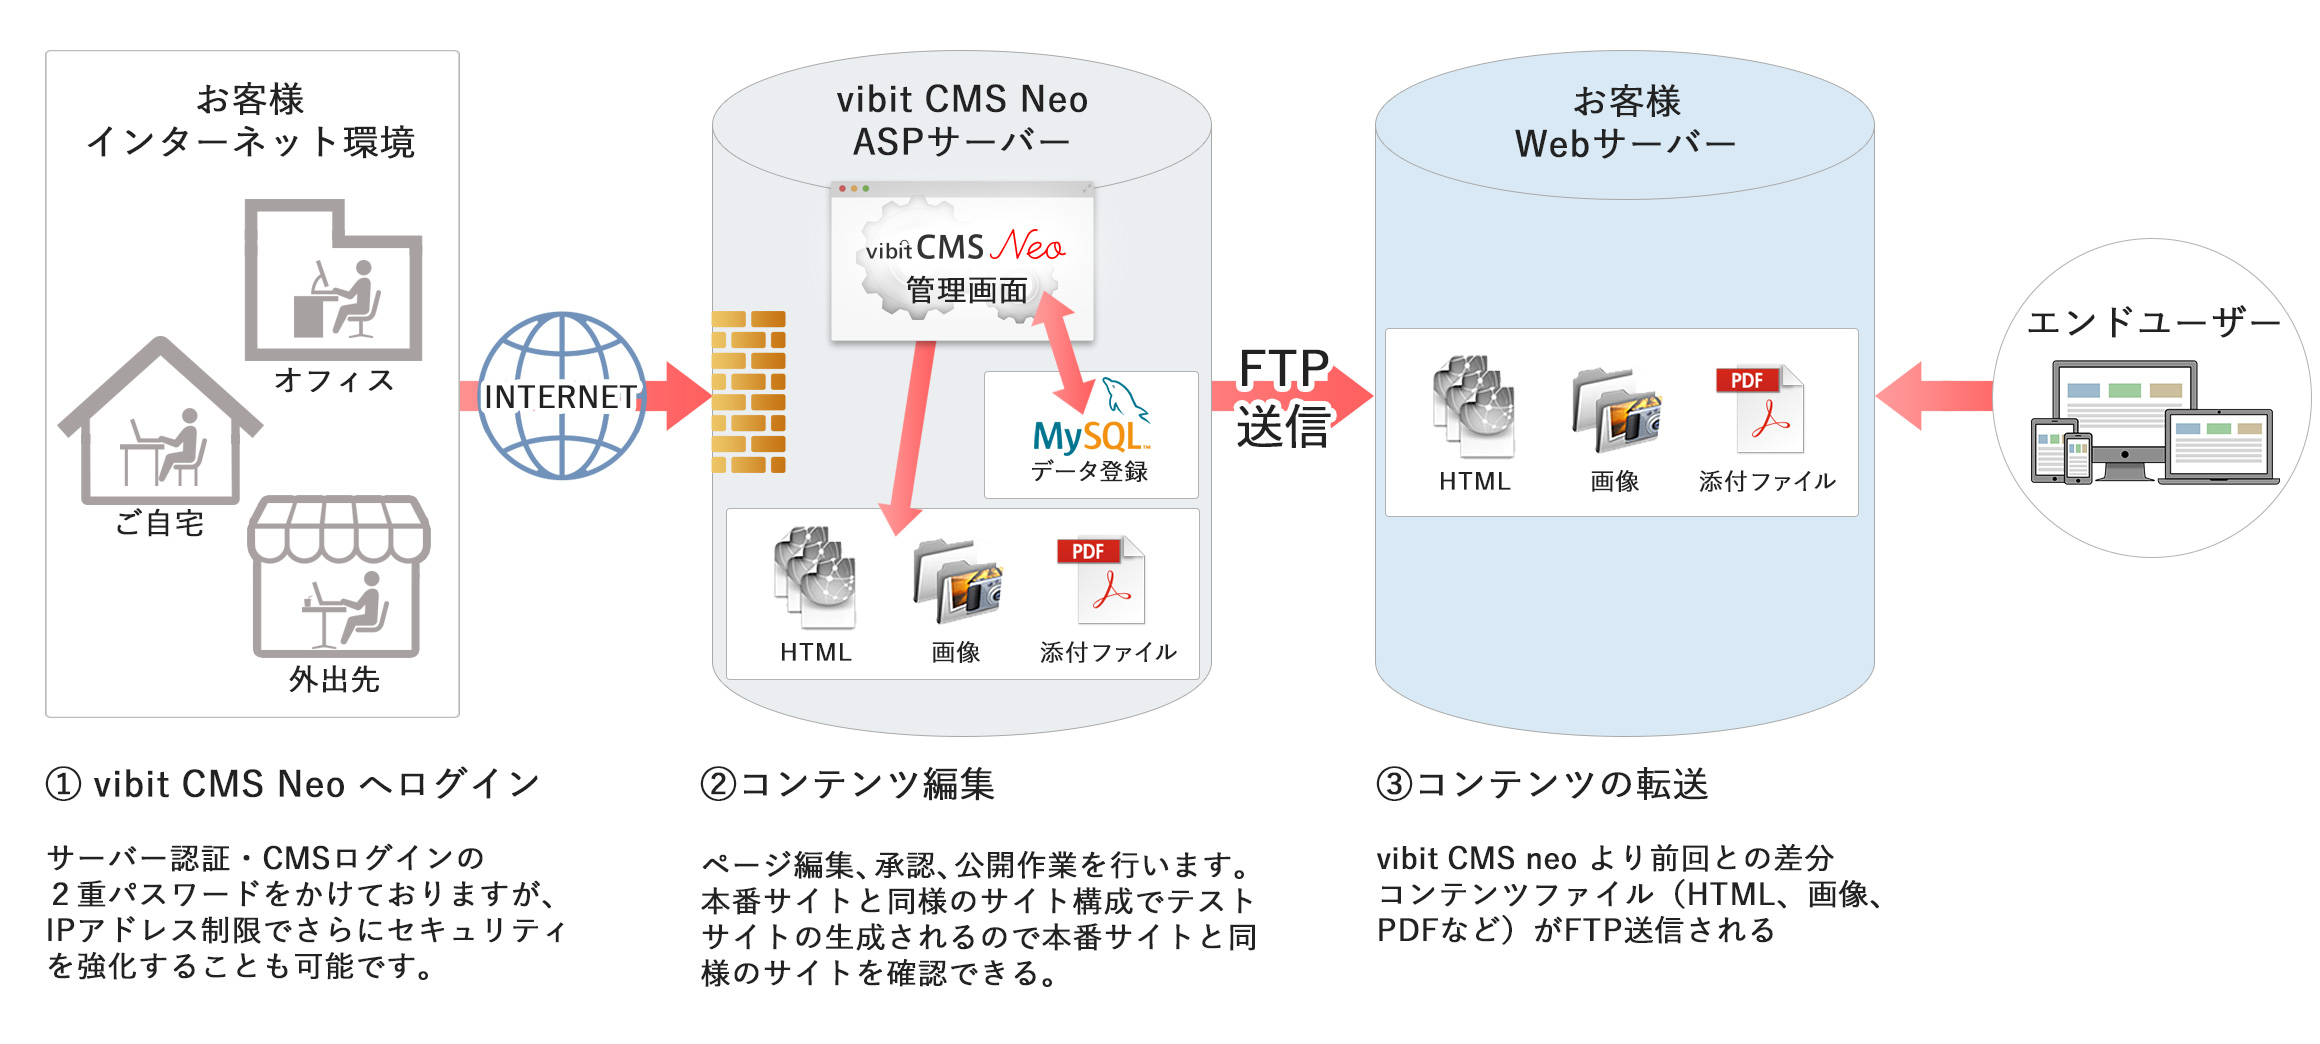 図版：vibit CMS Neo と公開サーバーの構成図。1.vibit CMS Neo へログイン2.コンテンツ編集3.コンテンツの転送